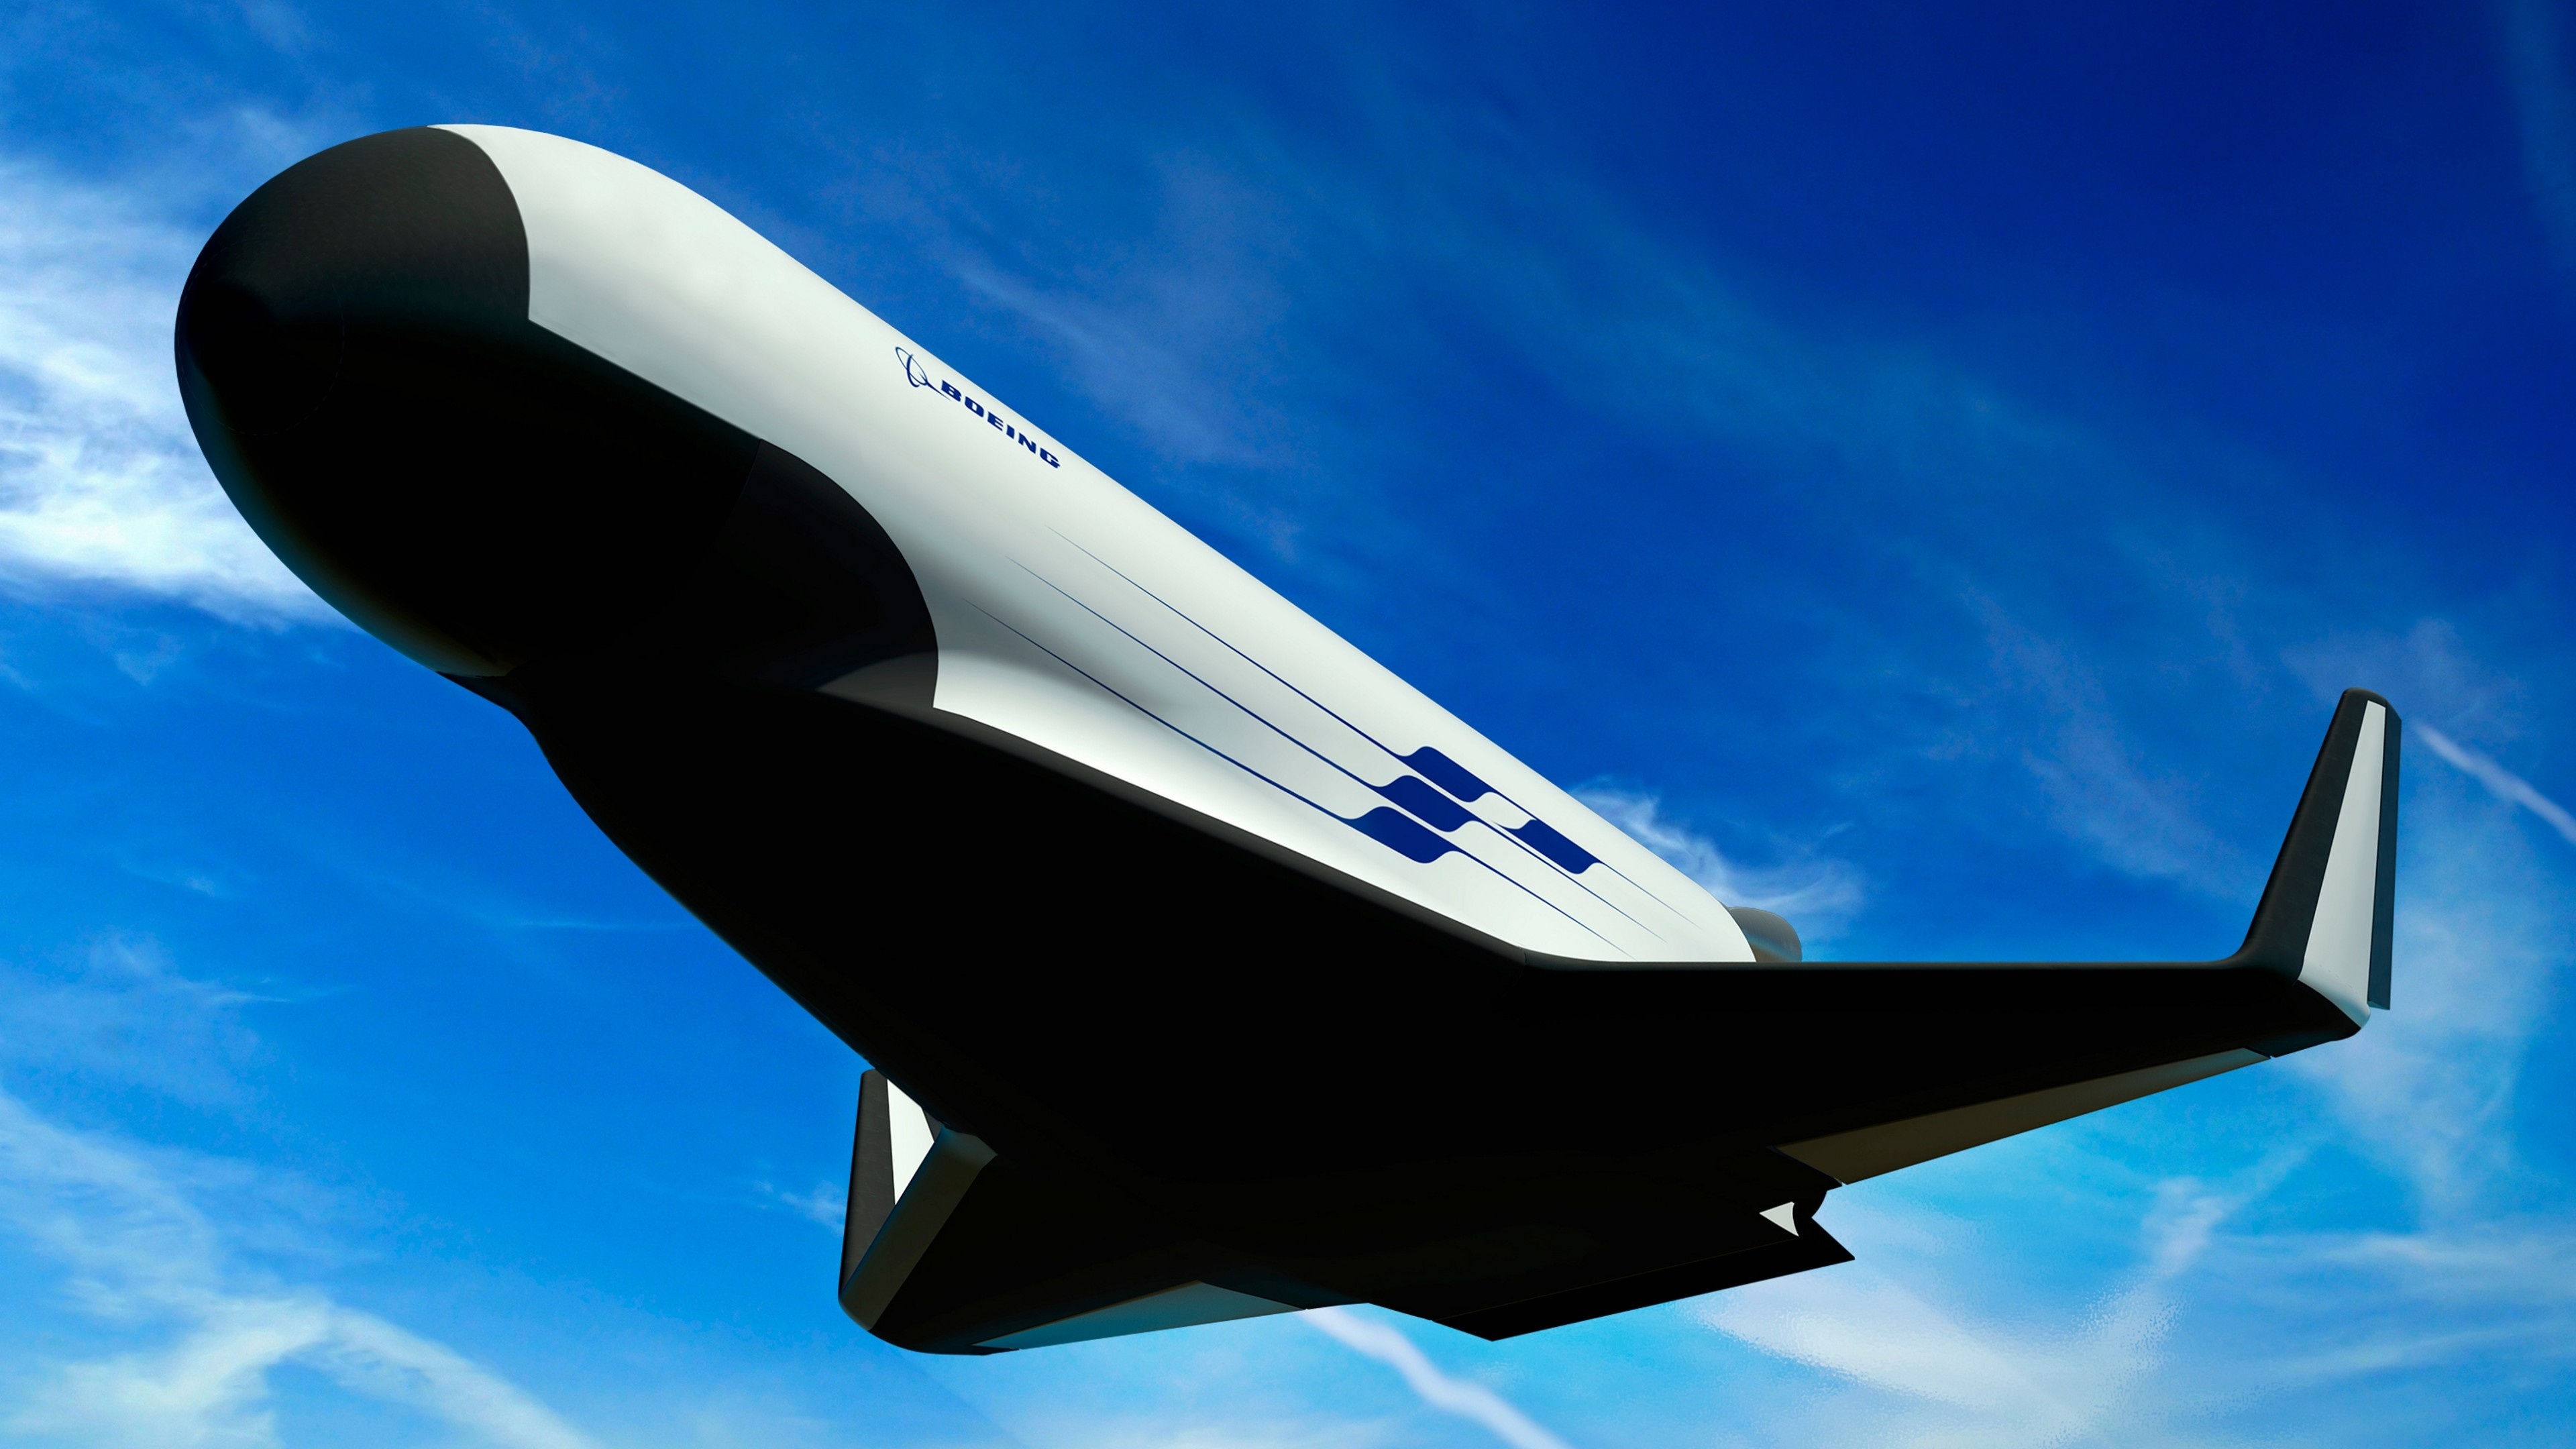 Boeing, Spaceplane concept, Futuristic design, Military capabilities, 3840x2160 4K Desktop